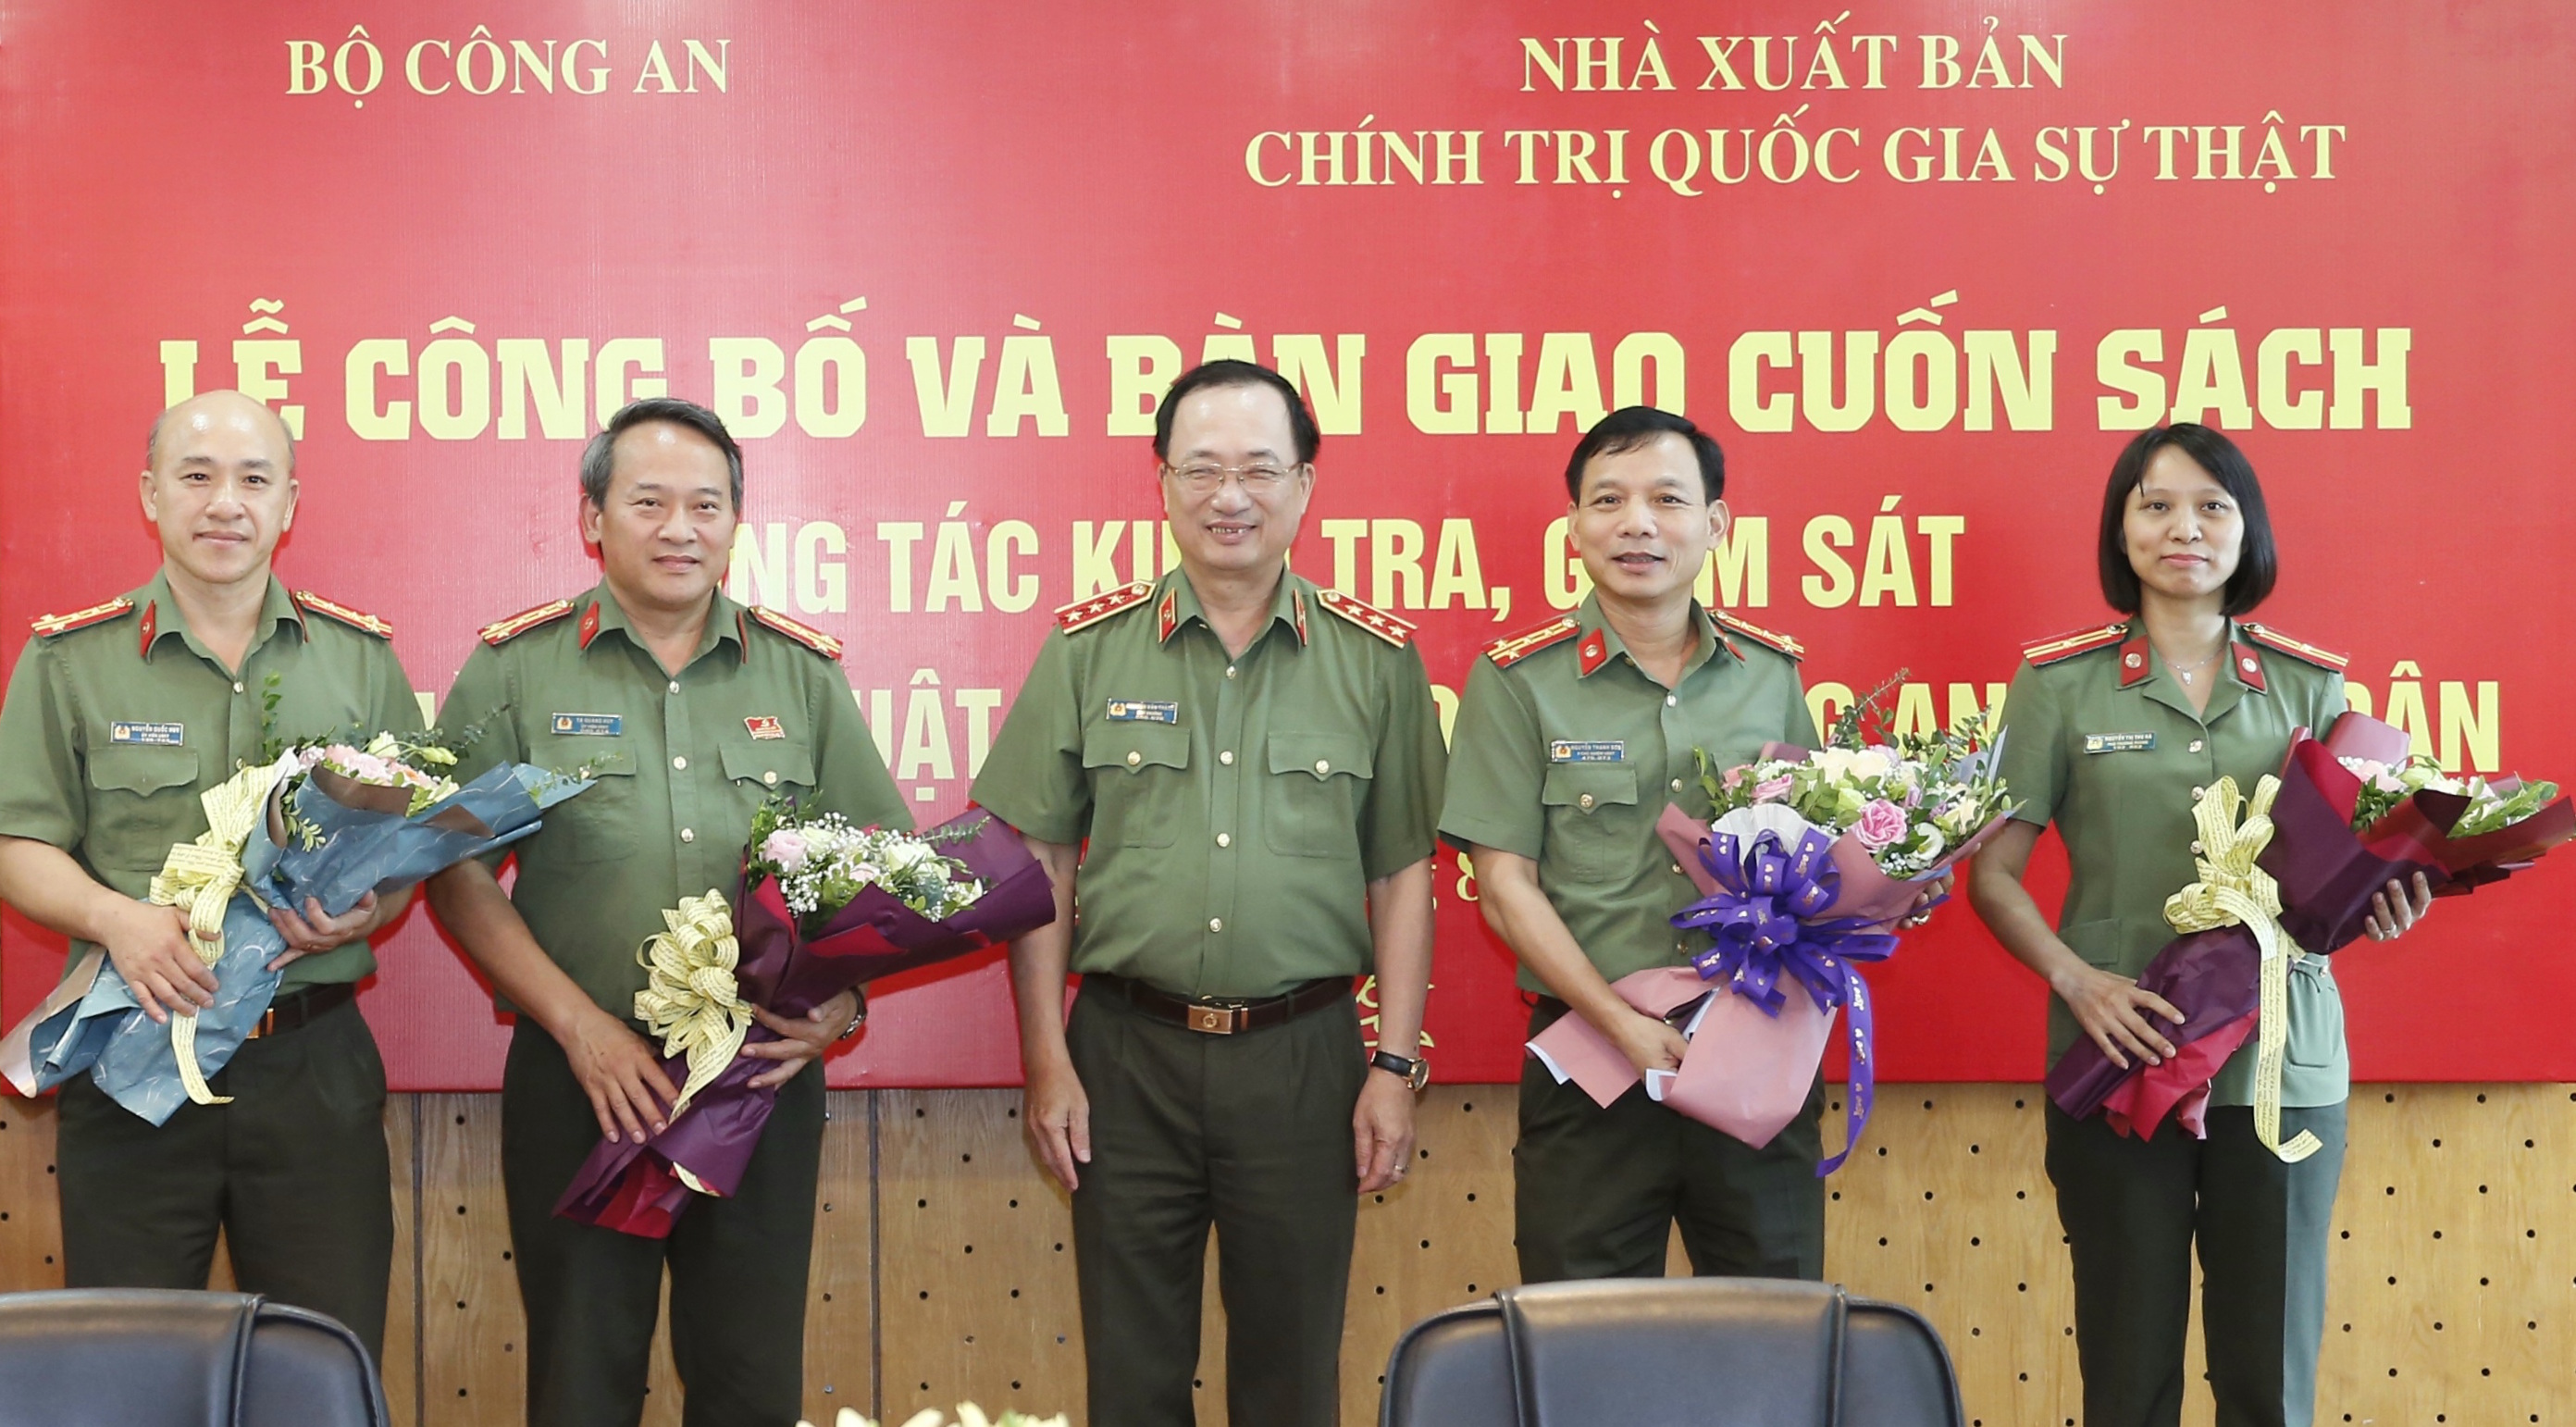 Thượng tướng Nguyễn Văn Thành, Thứ trưởng Bộ Công an trao sách cho các đồng chí đại diện Ủy ban Kiểm tra Đảng ủy Công an Trung ương